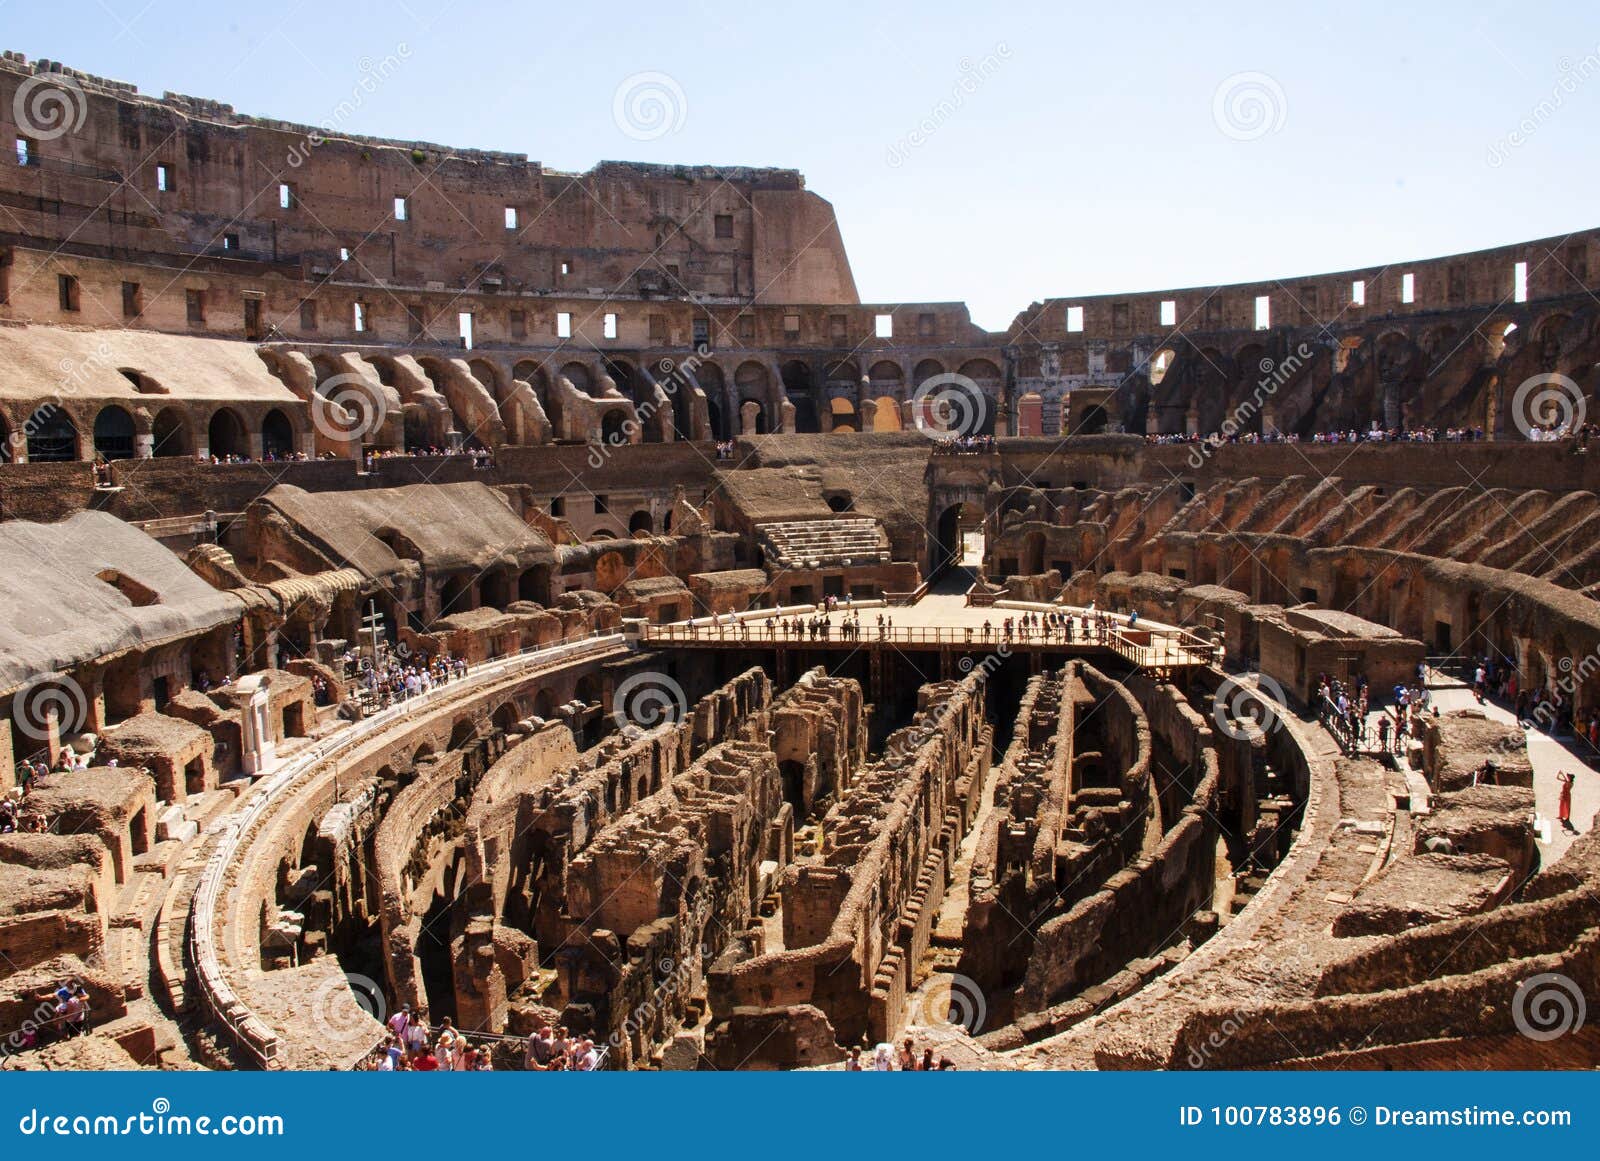 Colosseum del interior, Roma, Italia. Colosseum Colosseo del interior, Roma, Italia